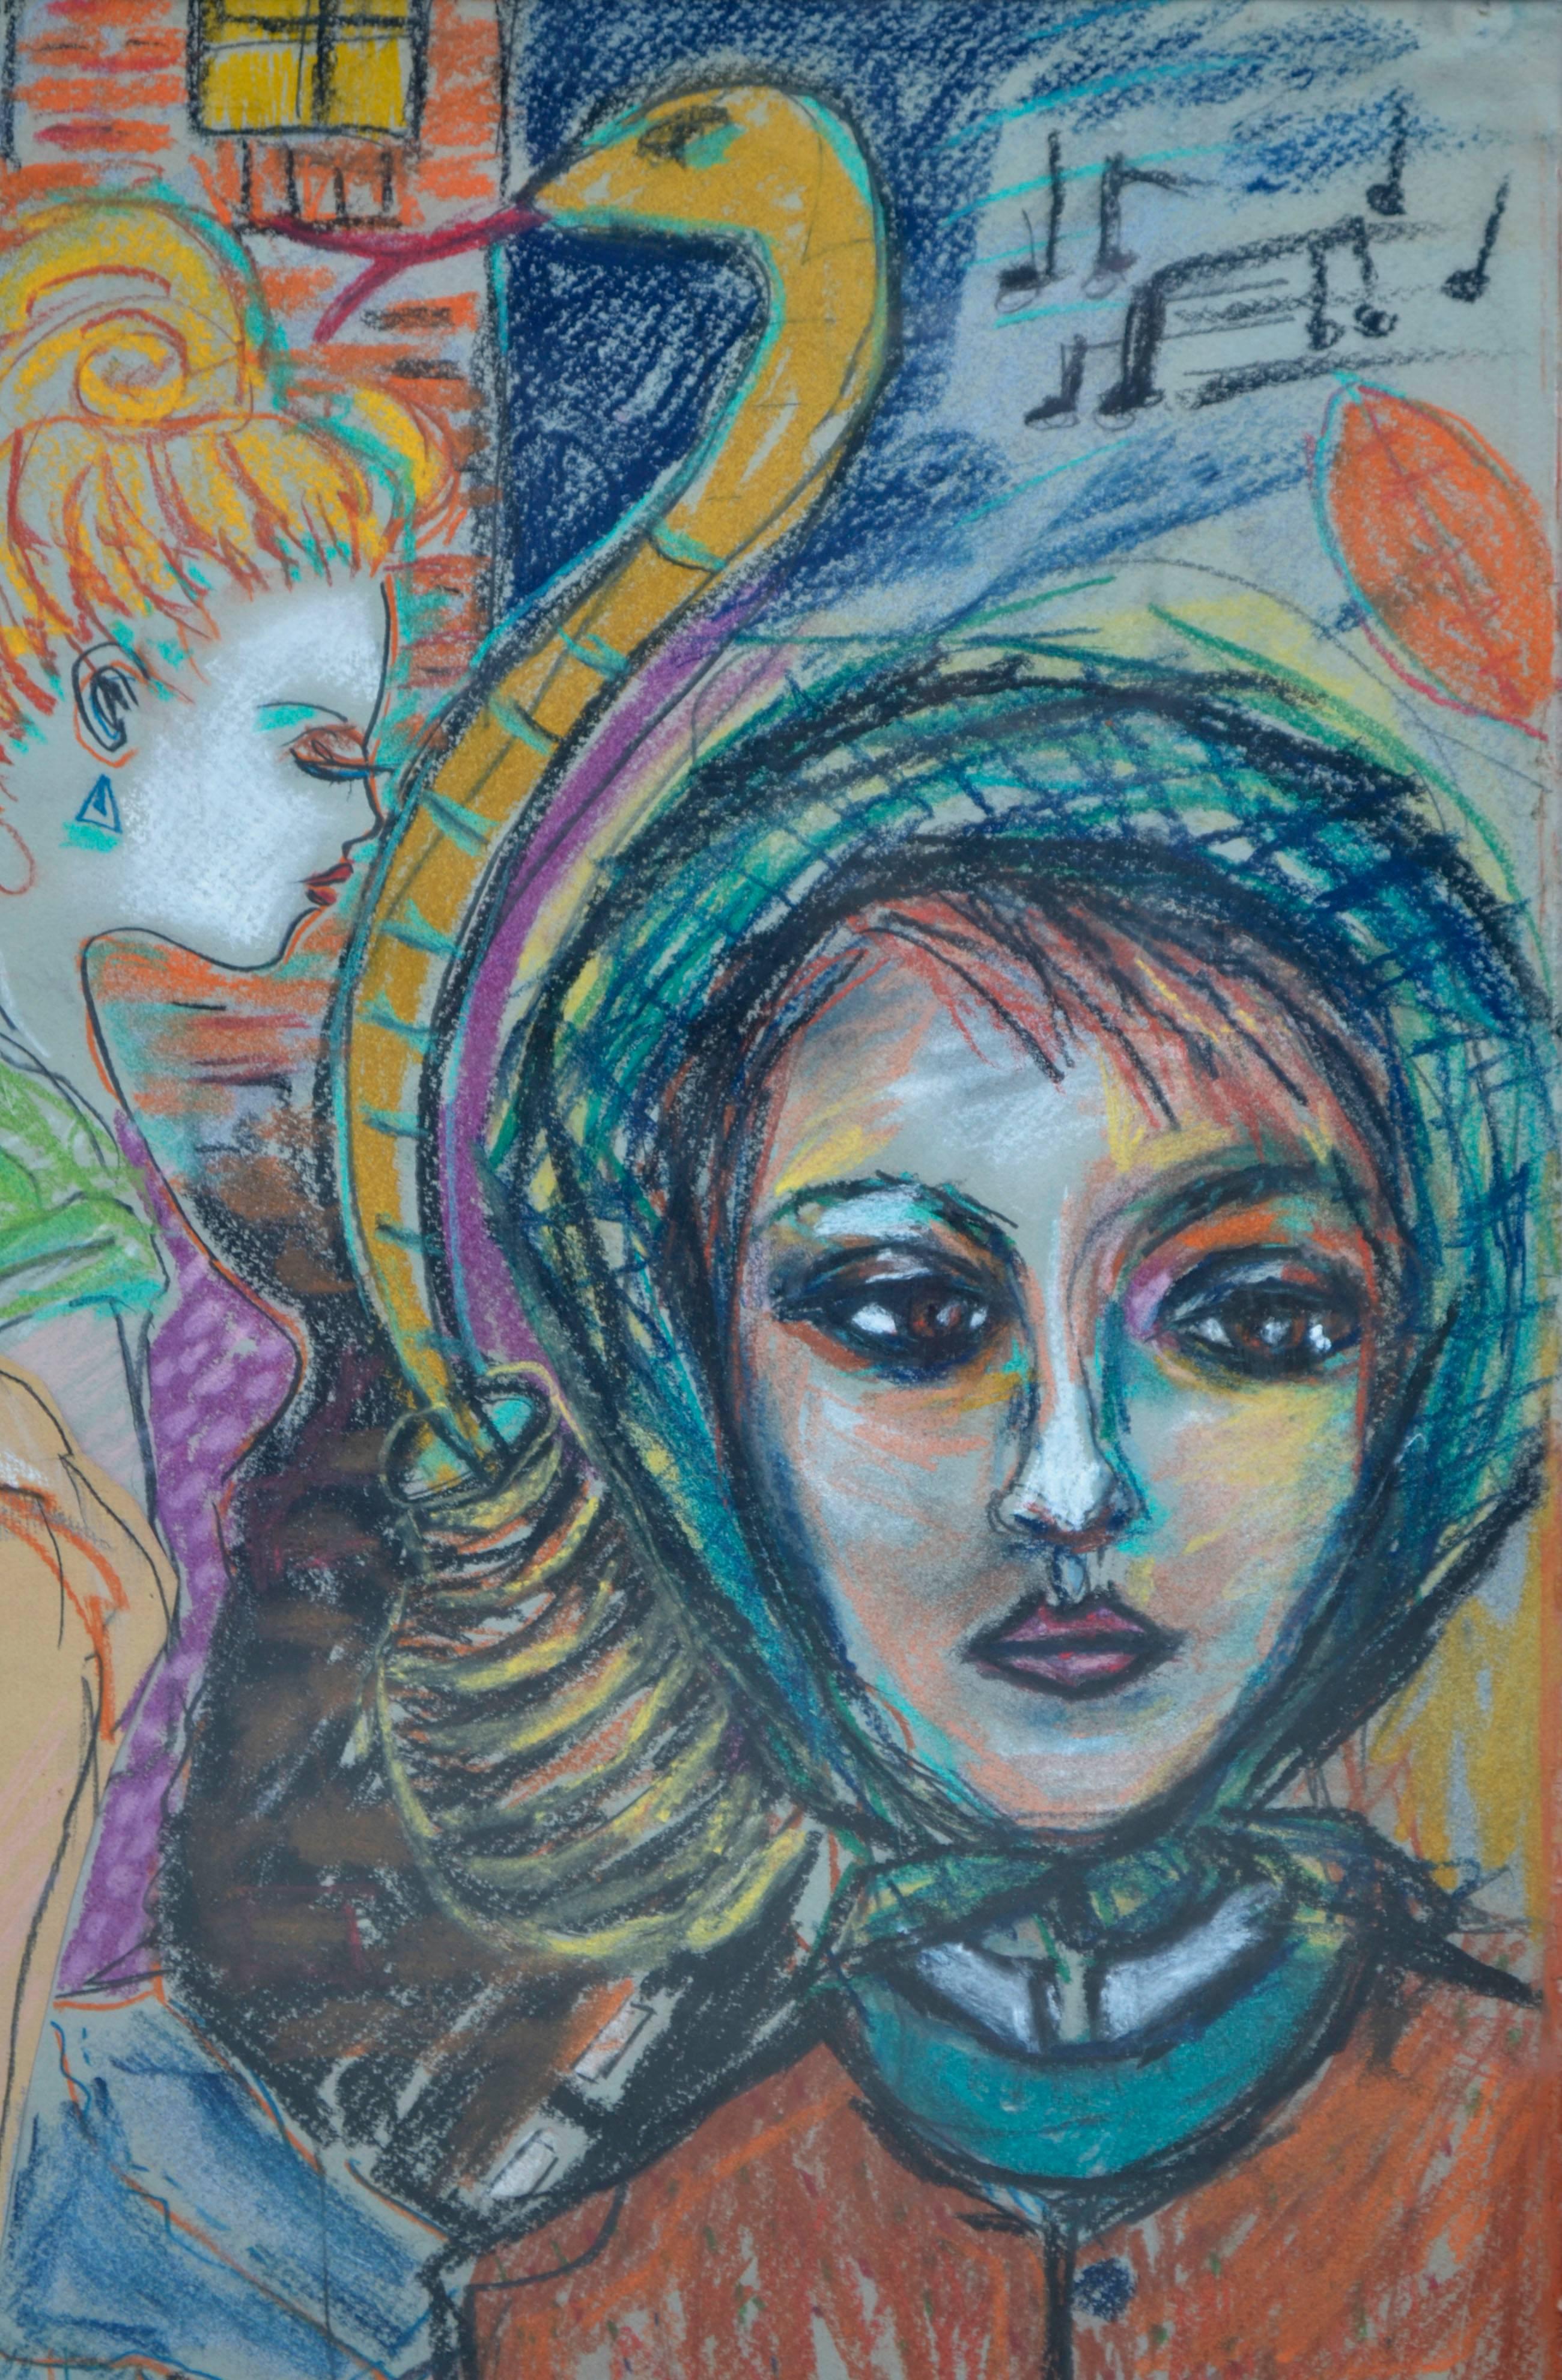 Farbe, Musik, Mode, Ruhm, Netzstrümpfe, Sport, Partyszene und Allegorie - alles Elemente der 1980er Jahre - sind in diesem Pastellbild des Künstlers Zoa Ace (Amerikaner, 20. Jahrhundert) aus Denver eingefangen. Signiert und datiert vom Künstler in